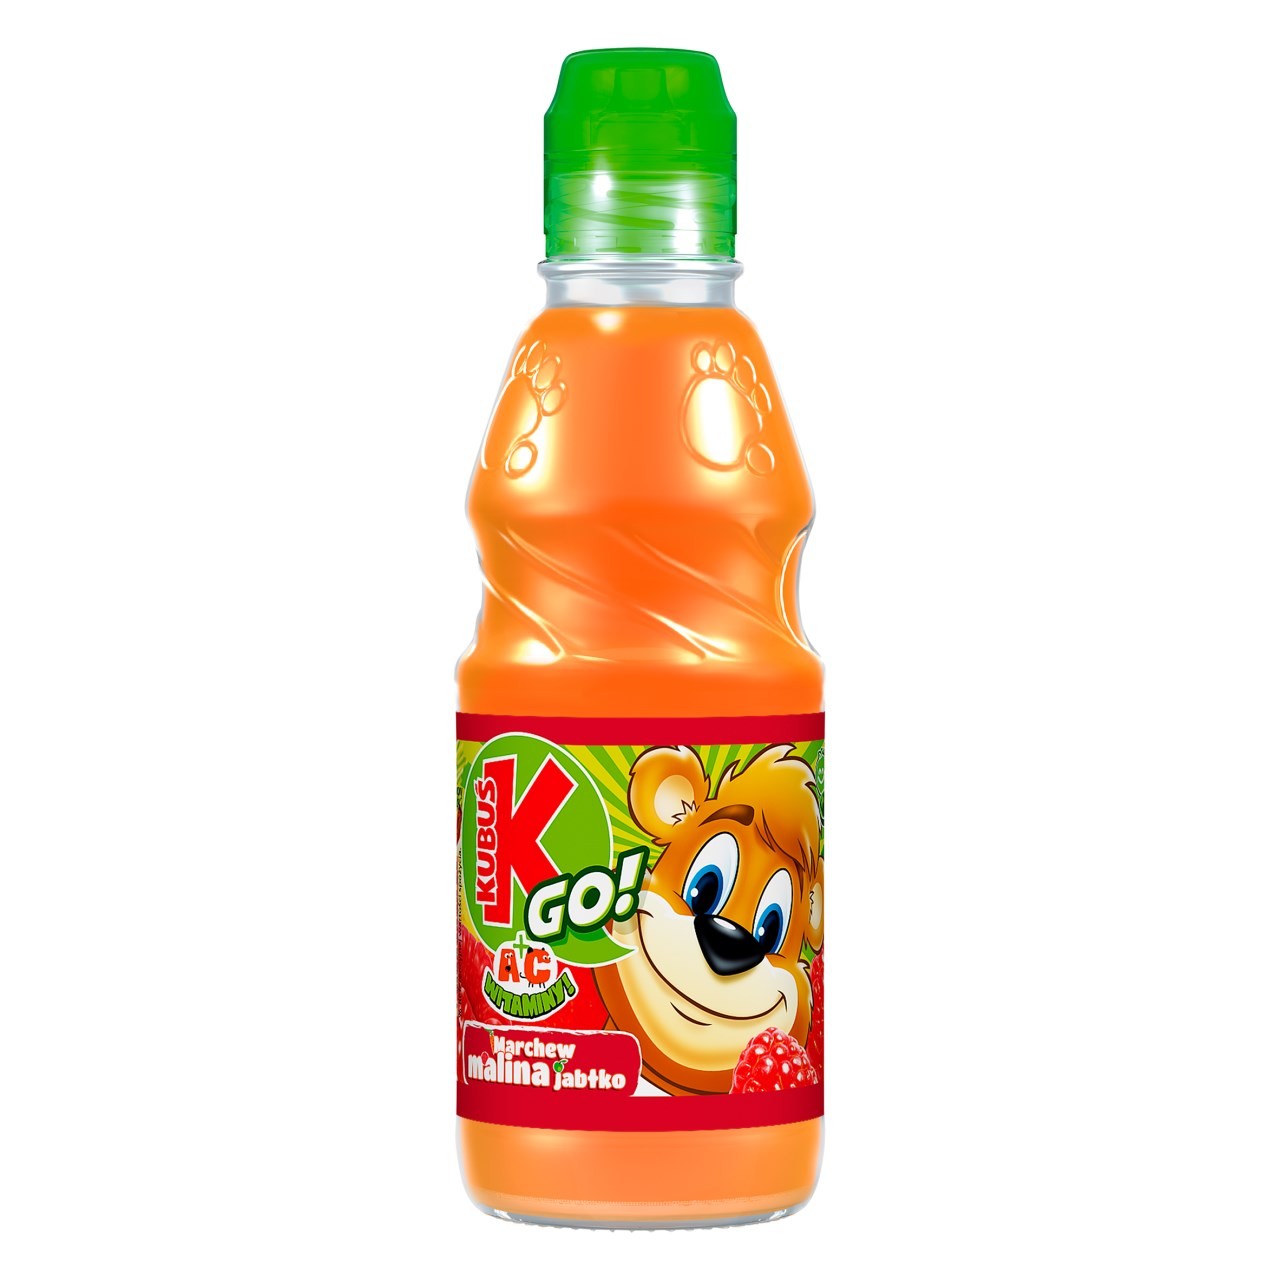 Kubus GO wortel - appel - framboos 0,3l